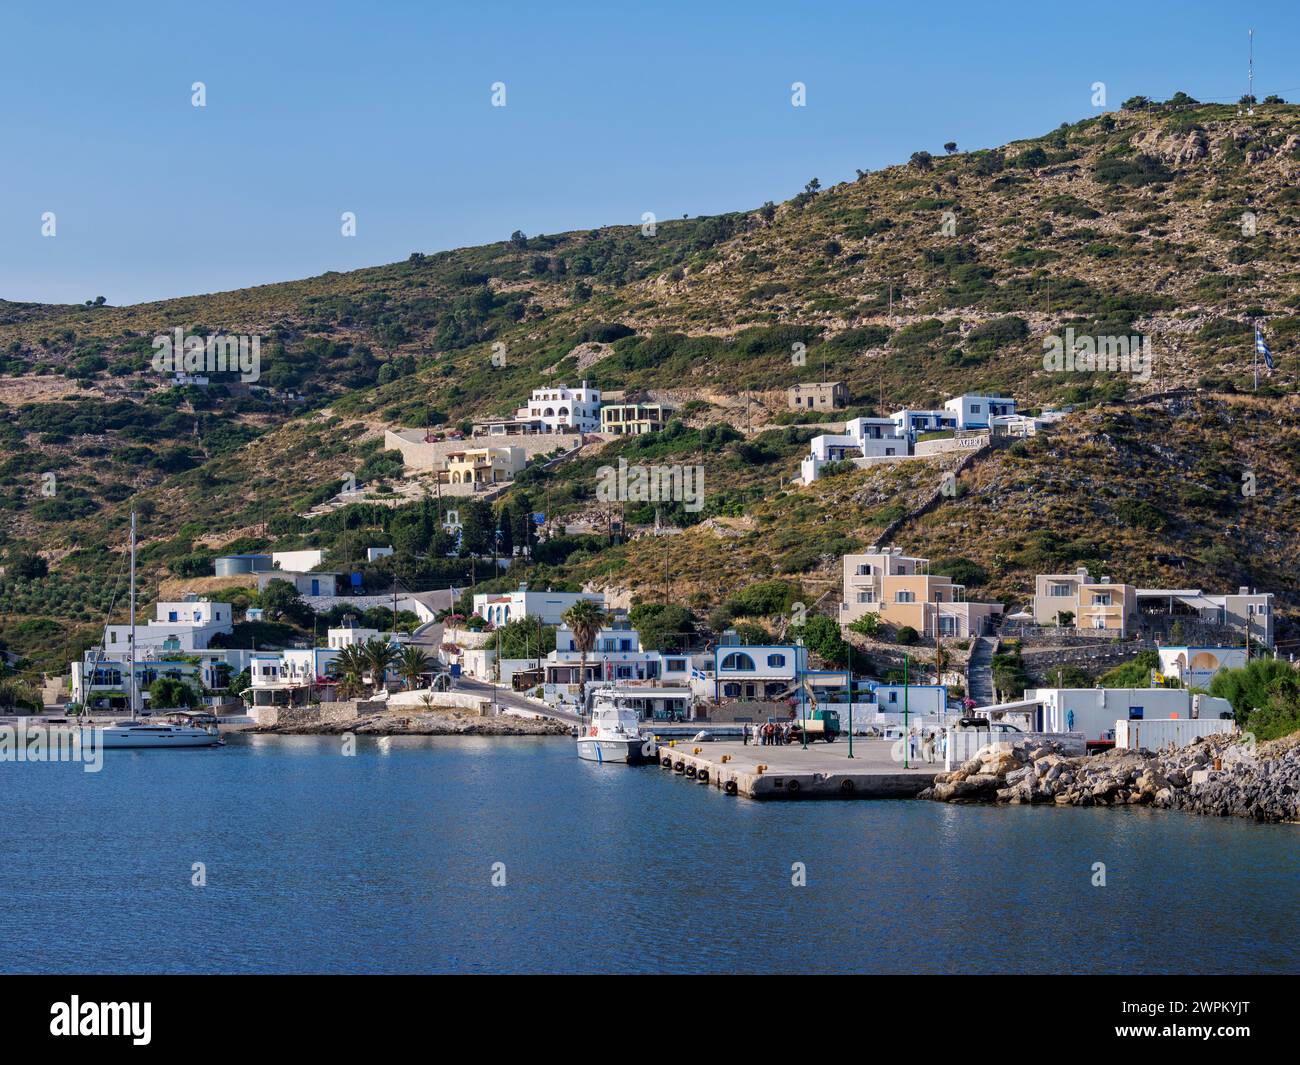 Porto di Agathonisi, isola di Agathonisi, Dodecaneso, isole greche, Grecia, Europa Foto Stock